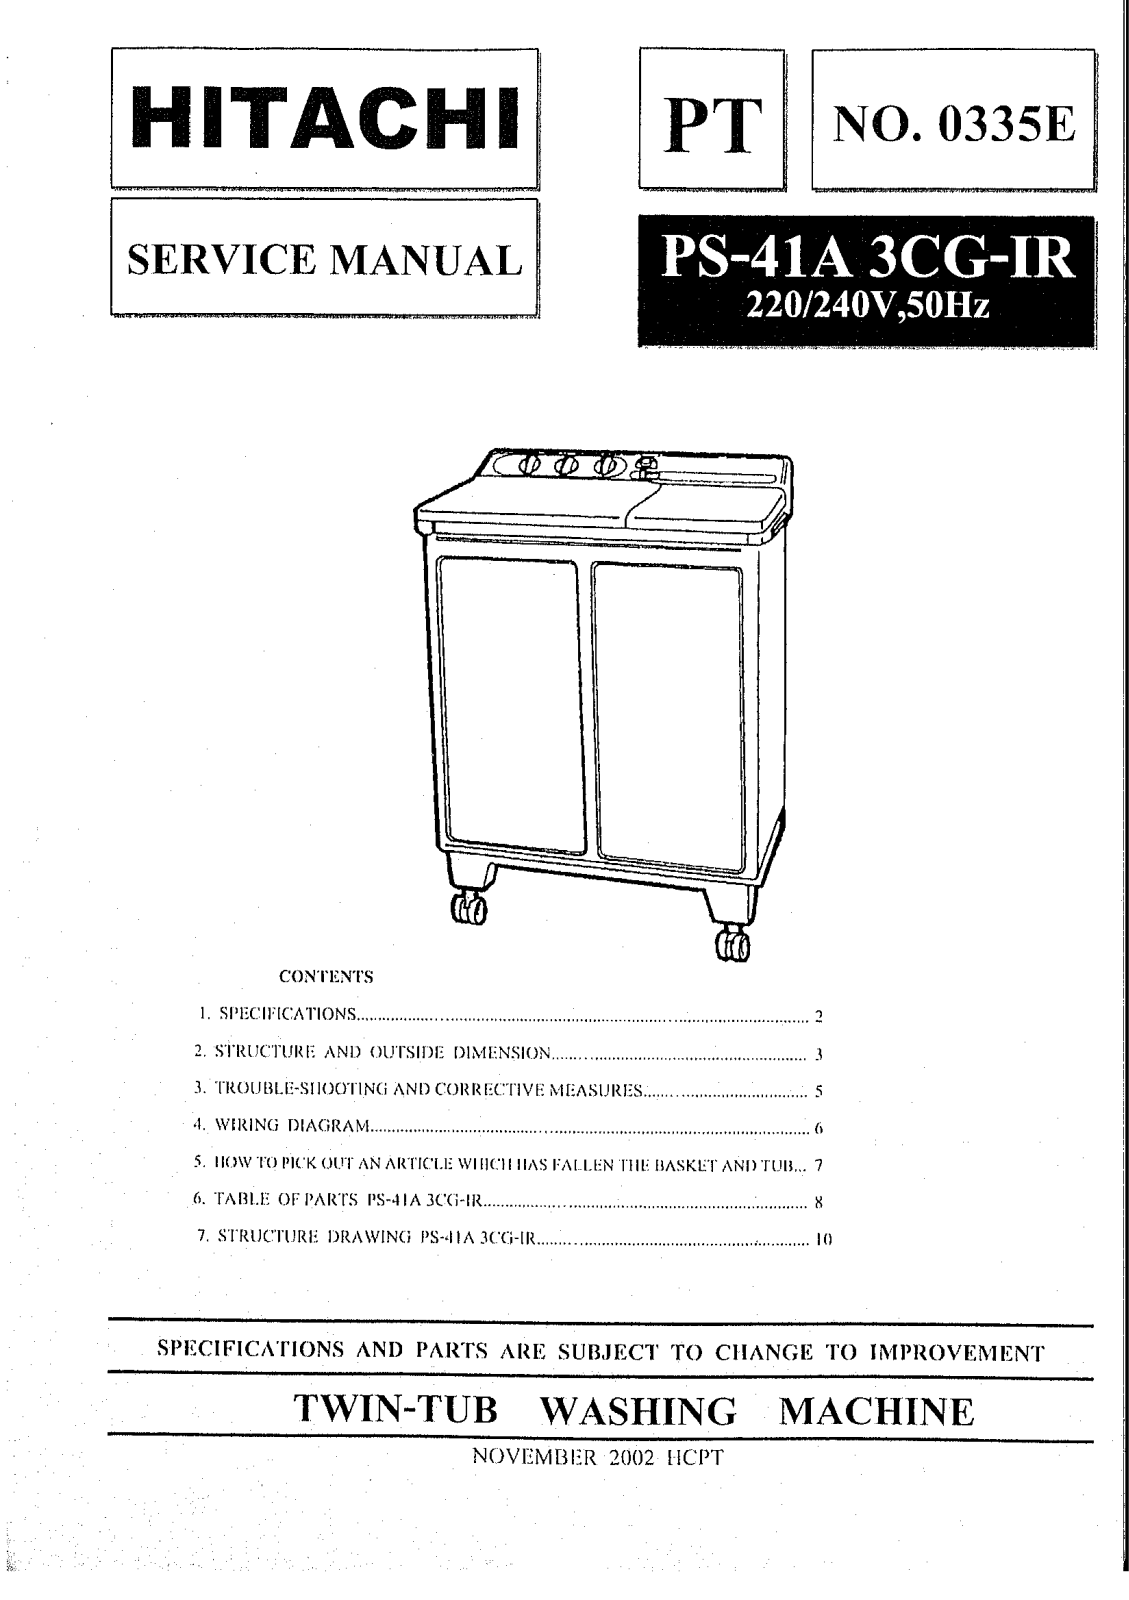 Hitachi PS-41A Service Manual